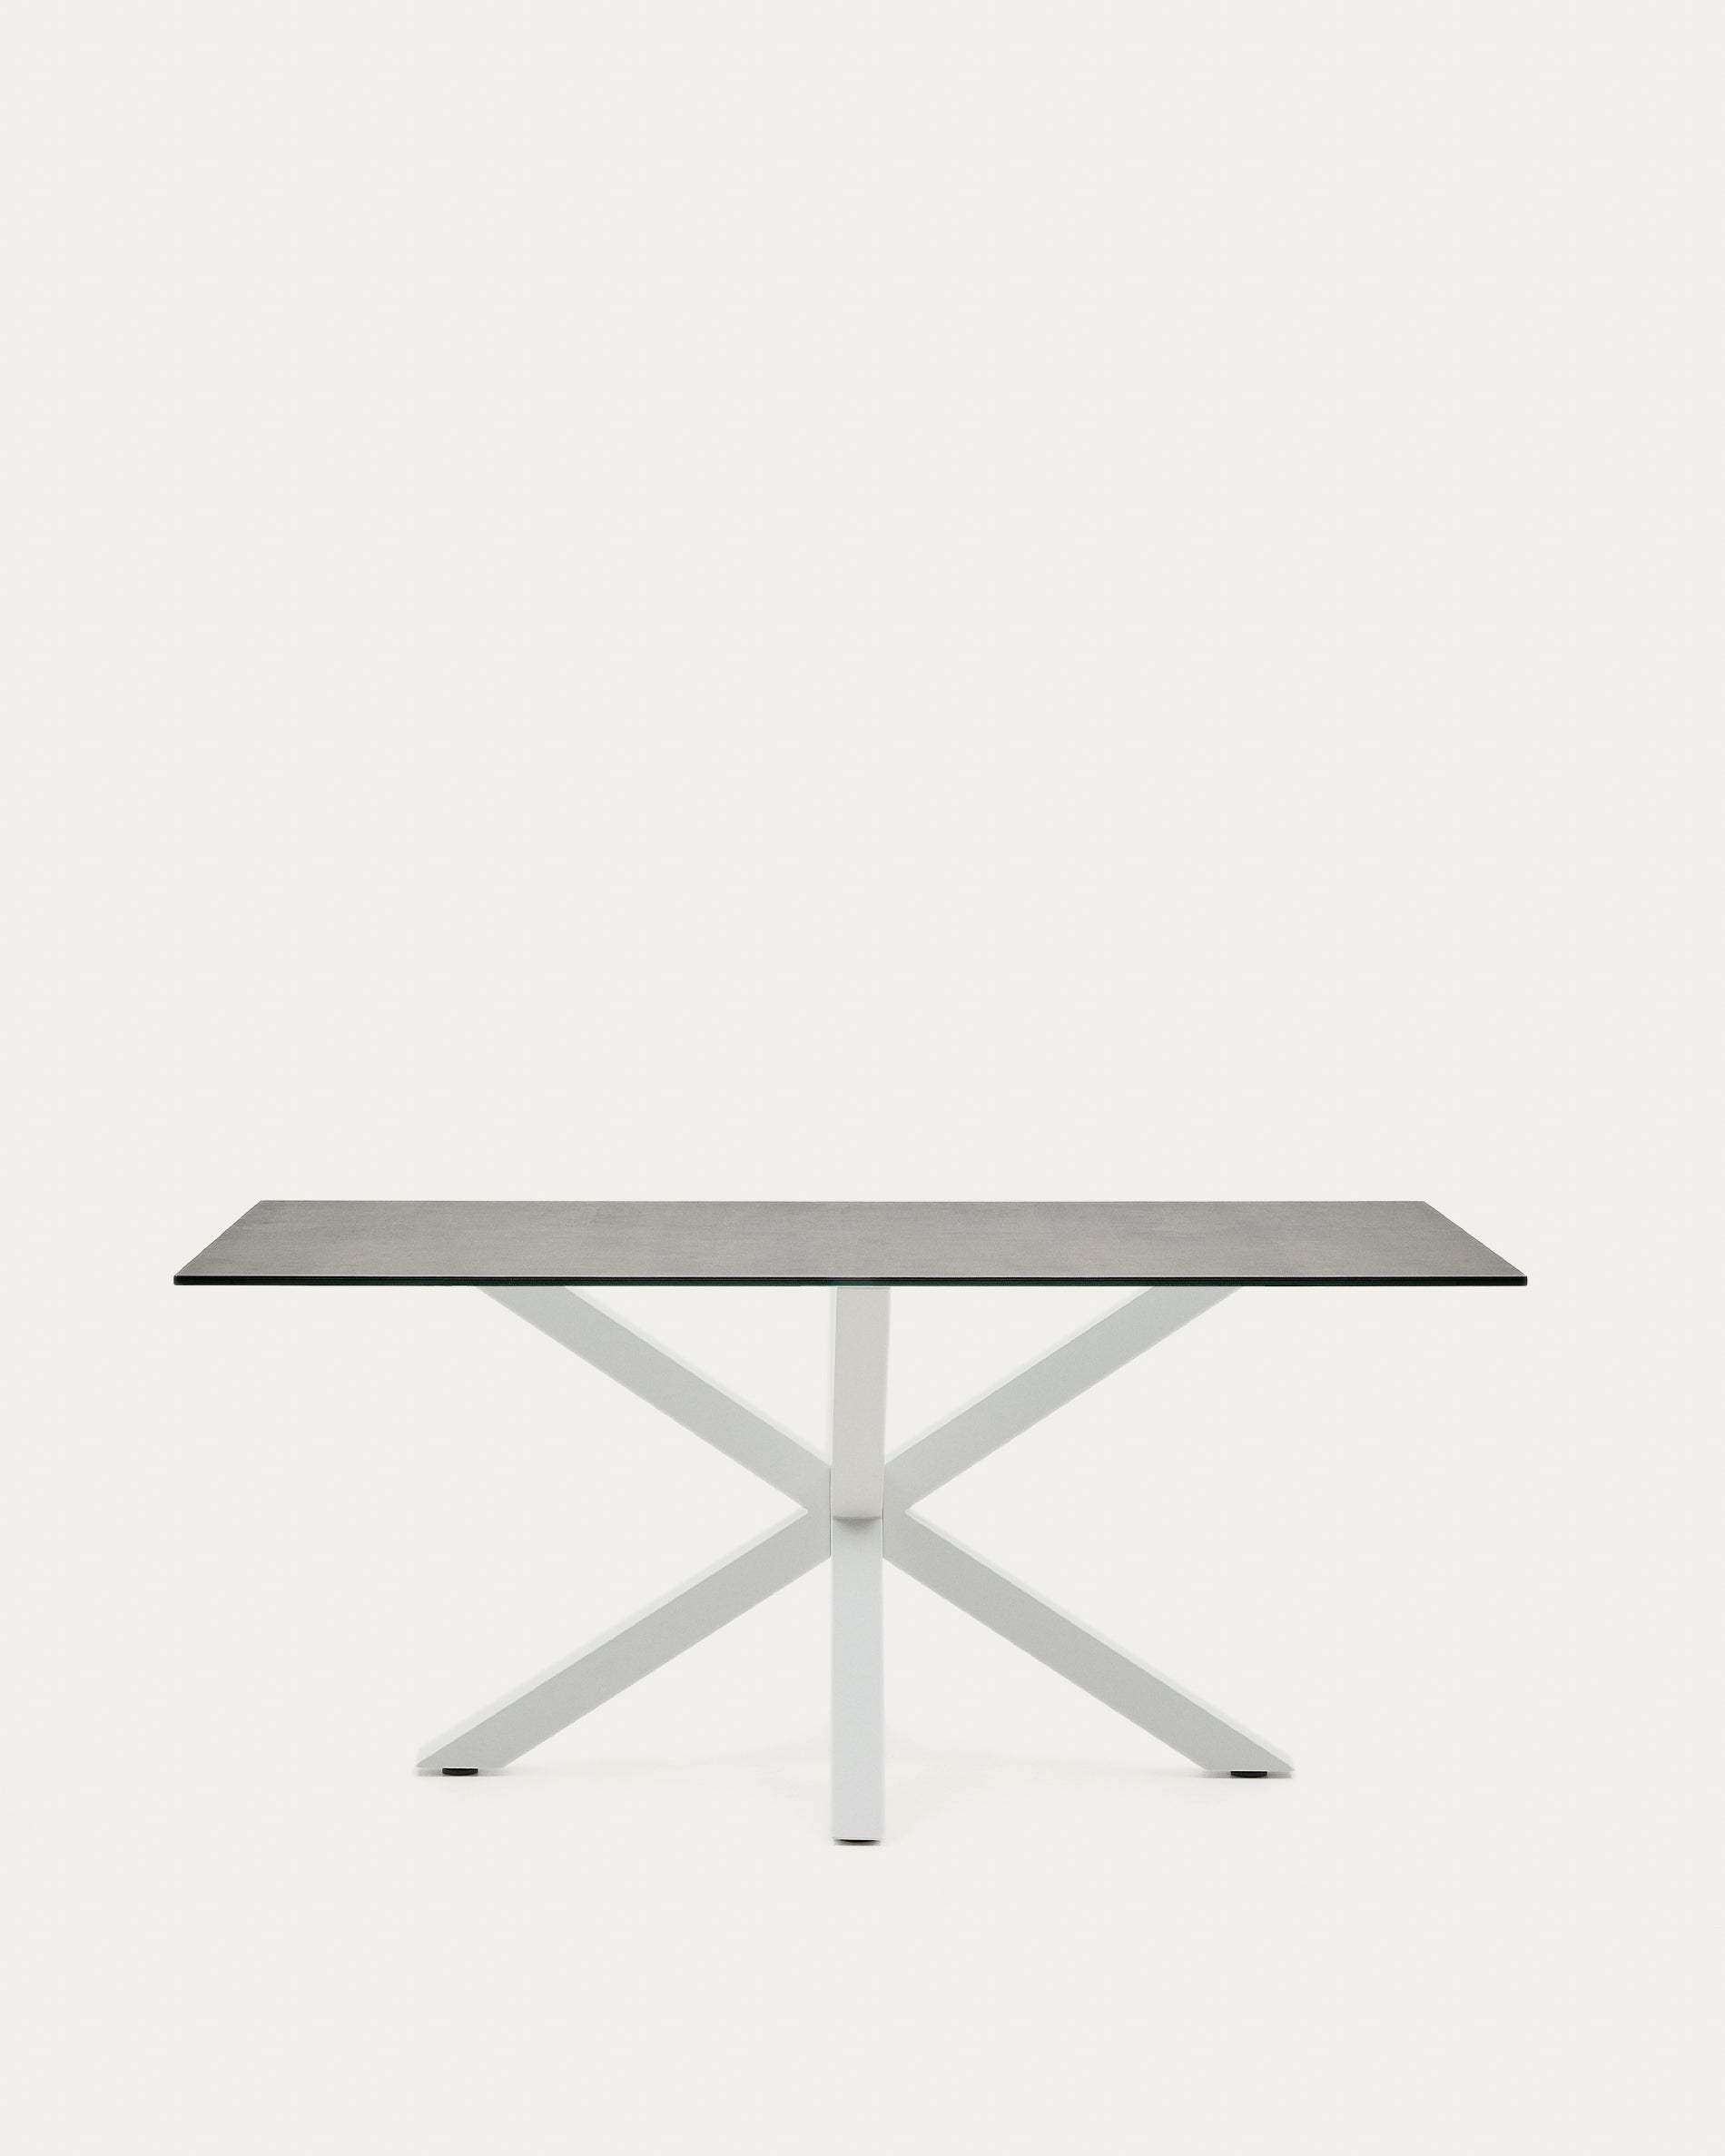 Argo asztal Iron Moss porcelánból és acél lábakkal, fehér befejezéssel, 160 x 90 cm